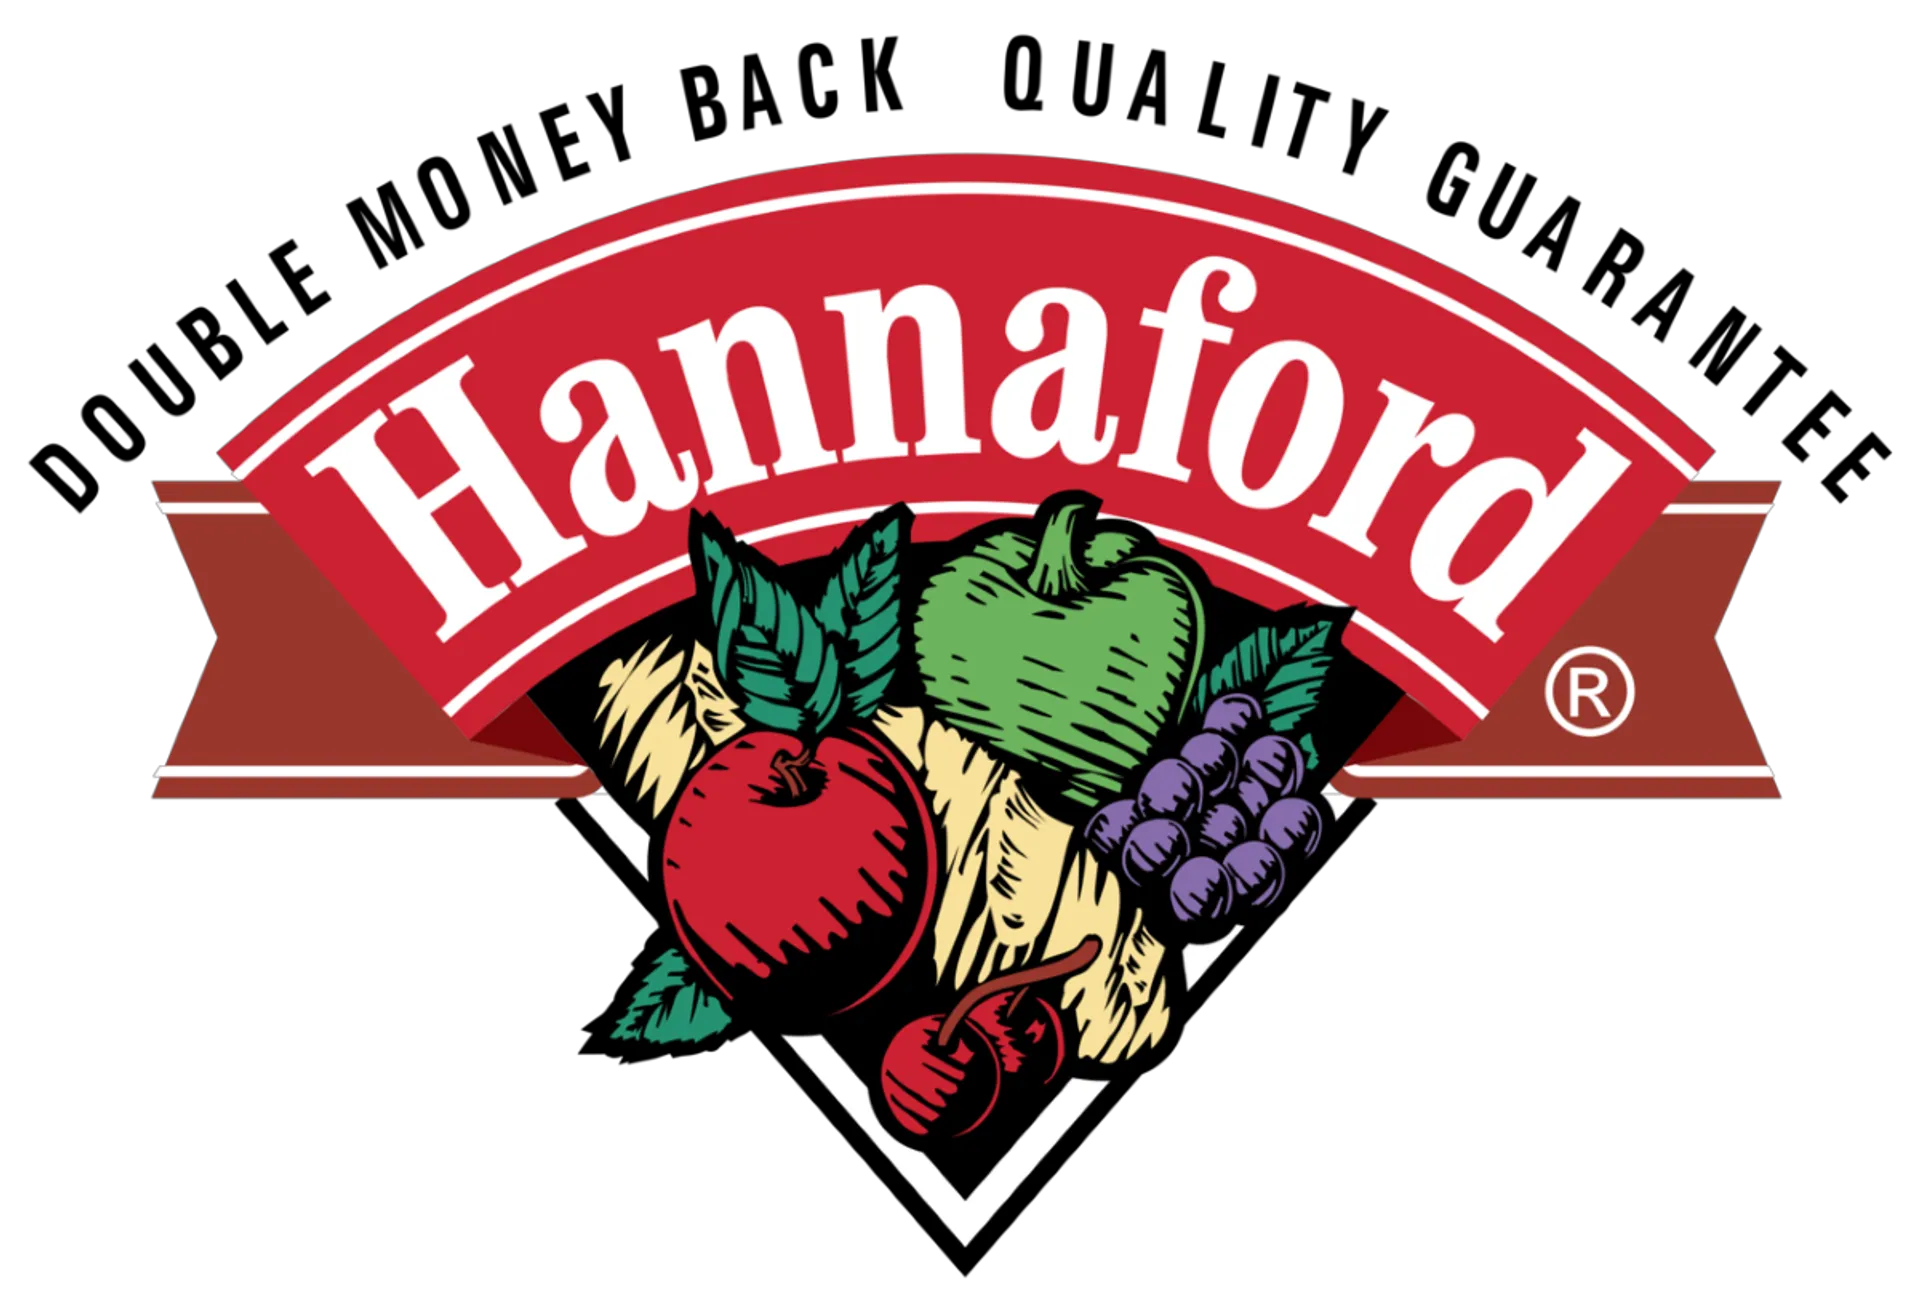 HANNAFORD logo. Current weekly ad